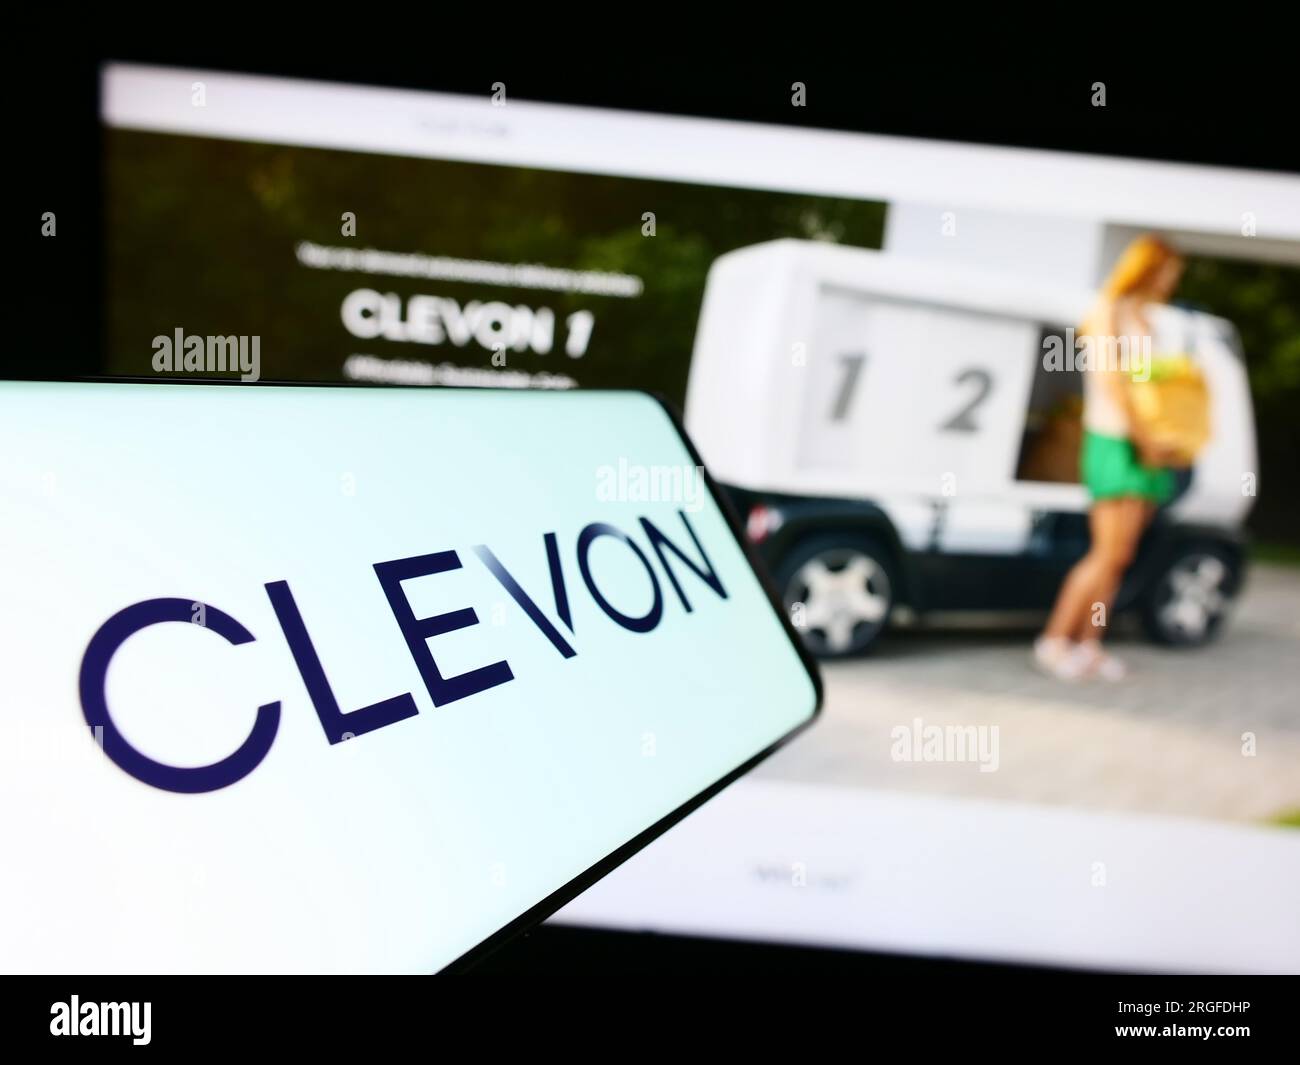 Smartphone avec logo de la société de véhicules autonomes Estionian Clevon COMME sur l'écran en face du site Web. Concentrez-vous sur le centre gauche de l'écran du téléphone. Banque D'Images